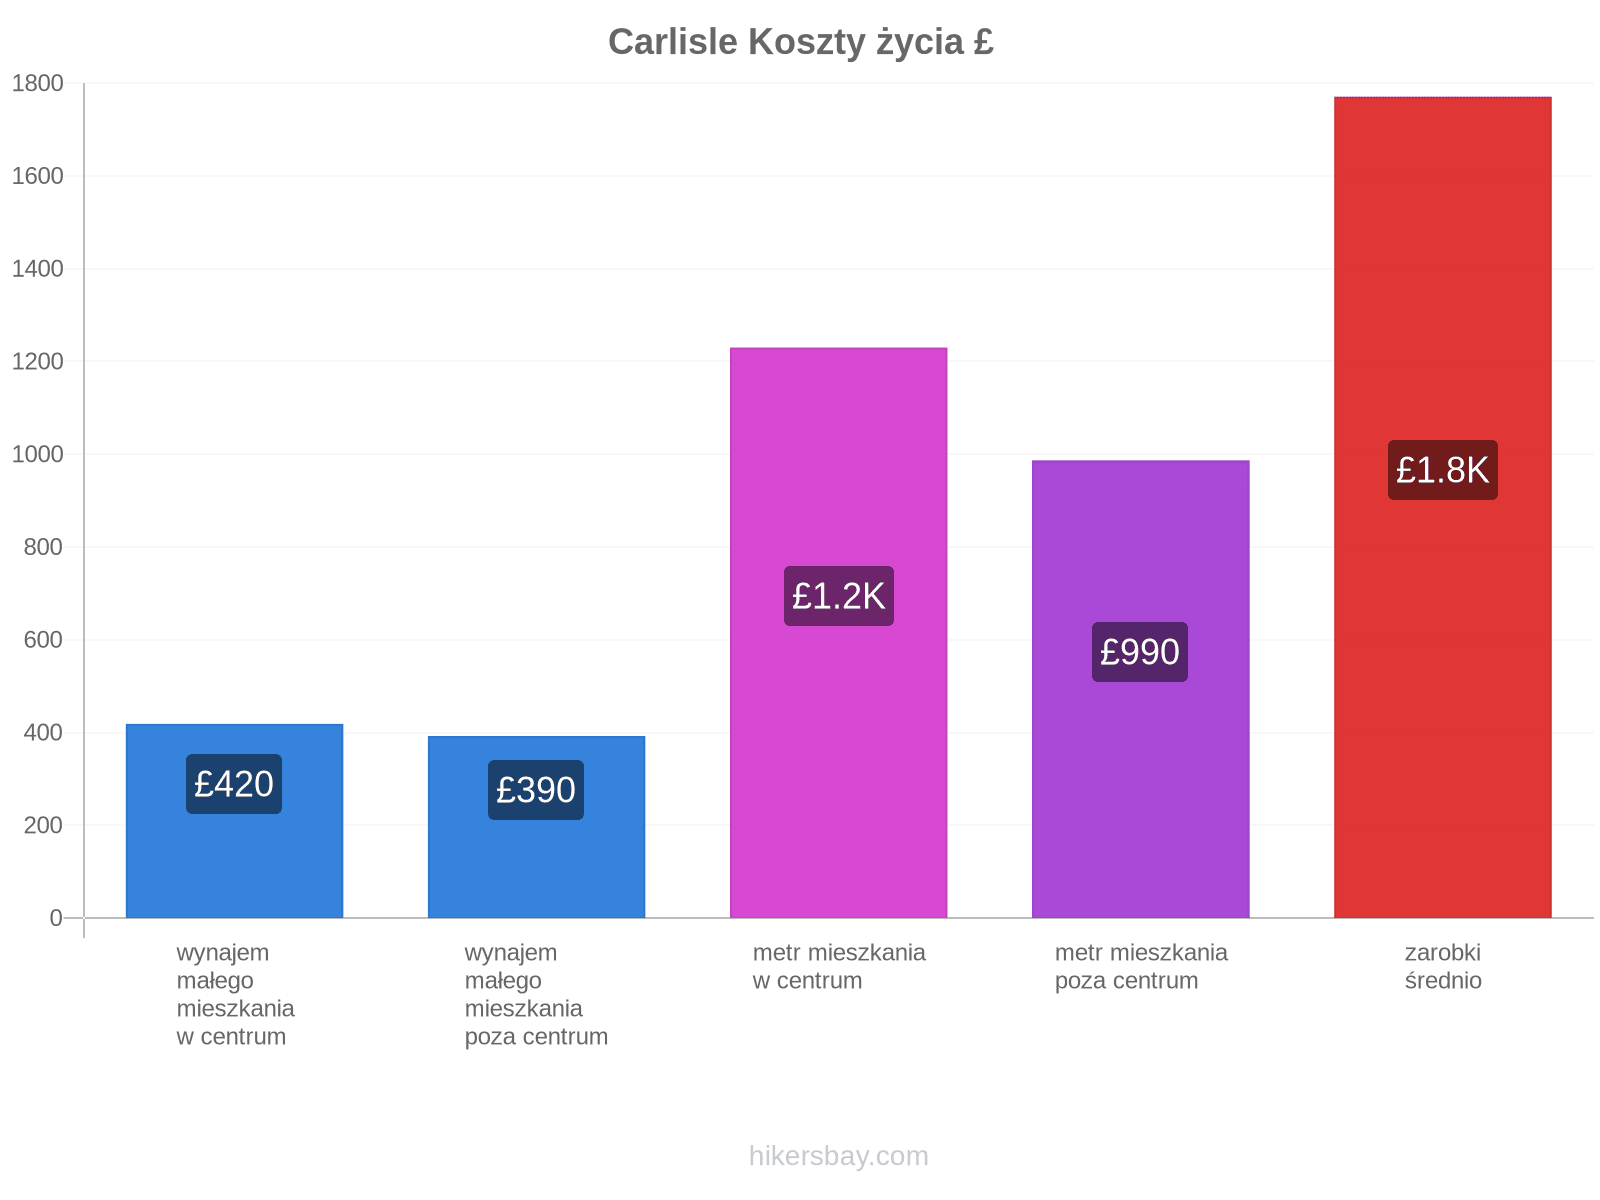 Carlisle koszty życia hikersbay.com